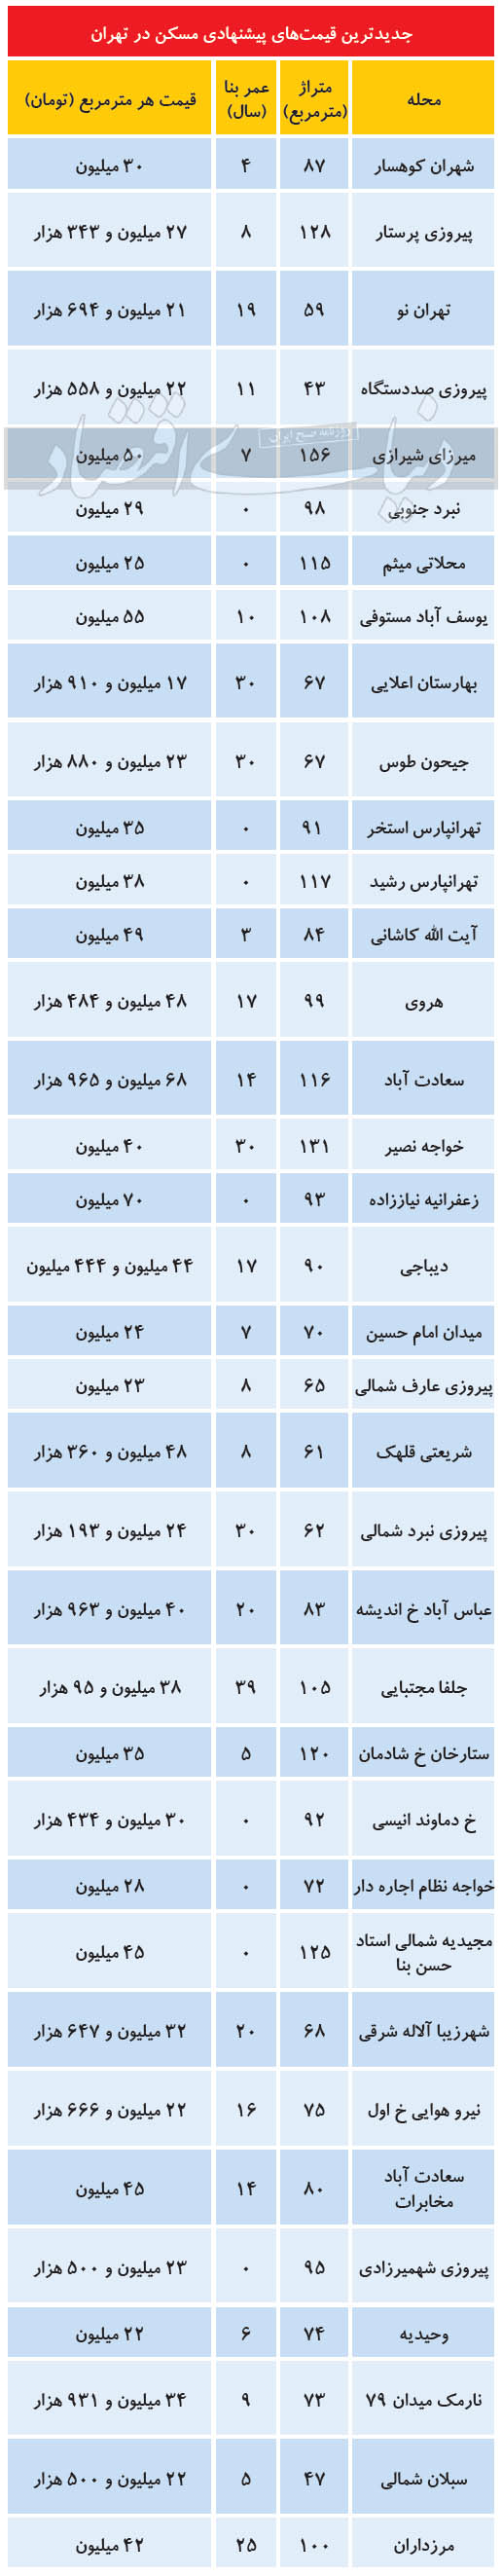 افت تقاضای خرید ملک در نوروز ۱۴۰۰/ جدول قیمت مسکن در نقاط مختلف تهران